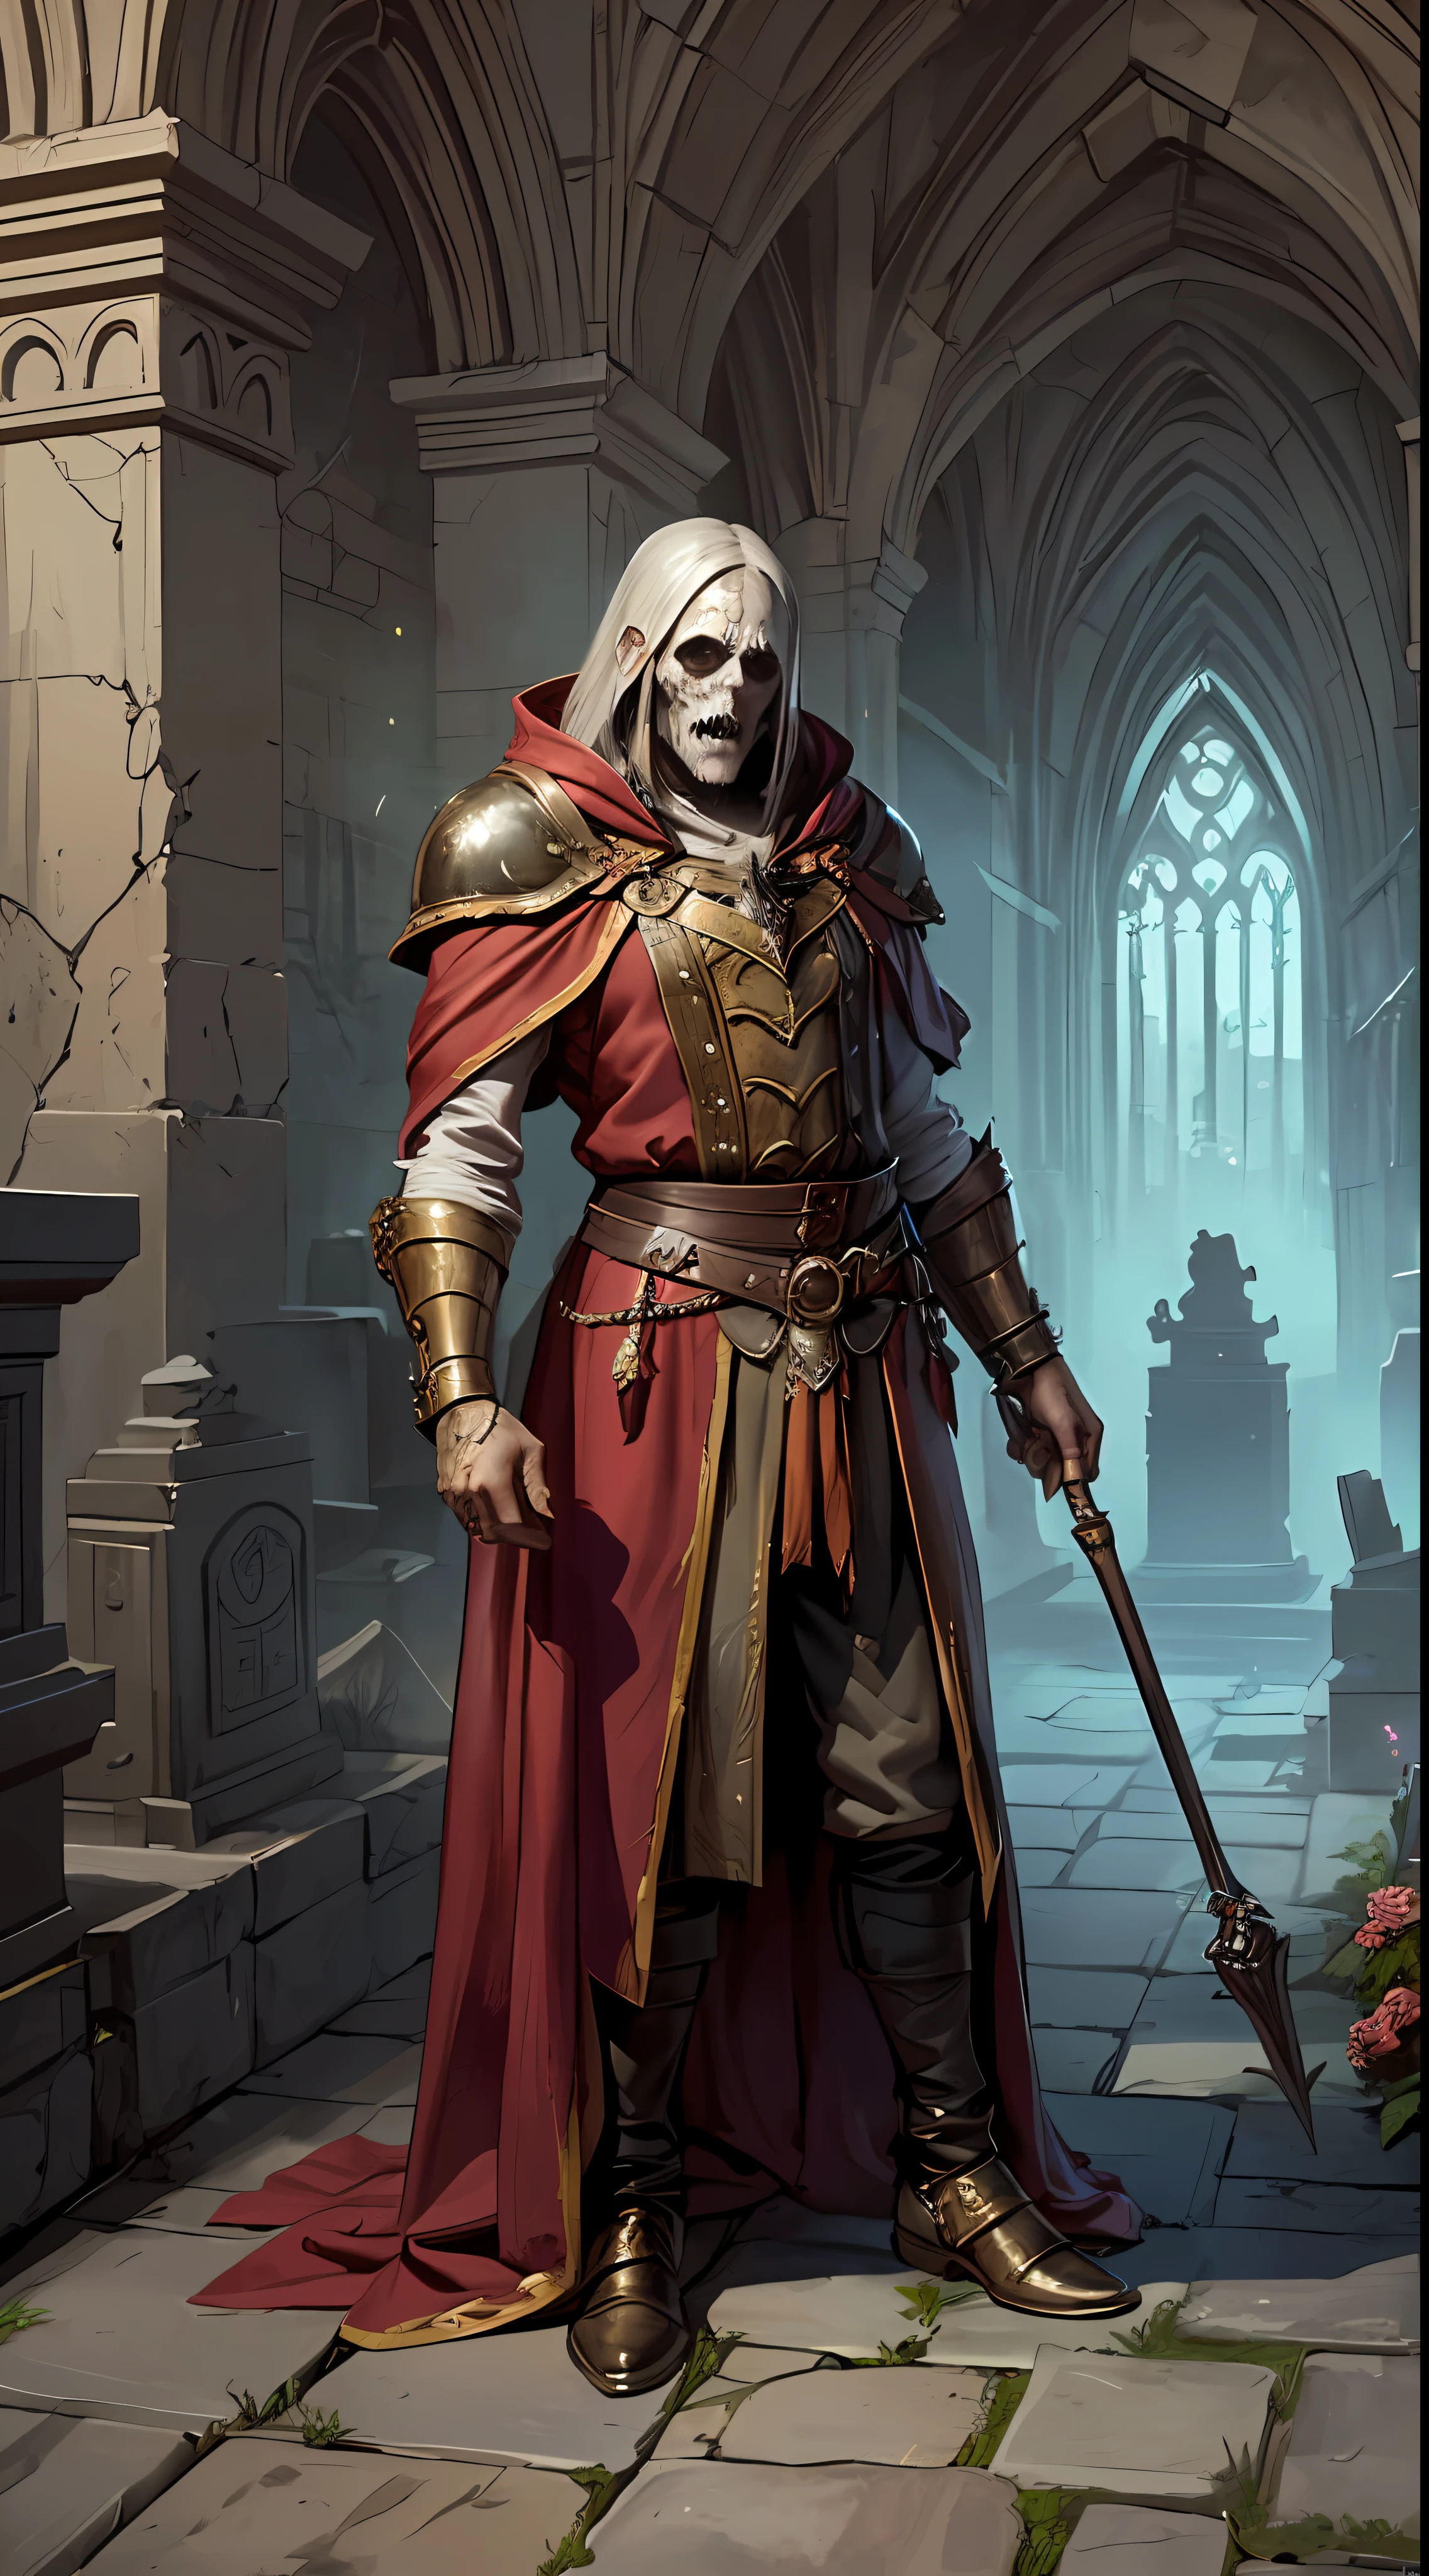 Un elfe mâle nécromancien, avec des détails réalistes, Manipulation de la magie sur un mort-vivant dans le cimetière gothique médiéval. (Hyper-réalisme:1.2, D&art fantastique:1.1, tendance art station:1.1)